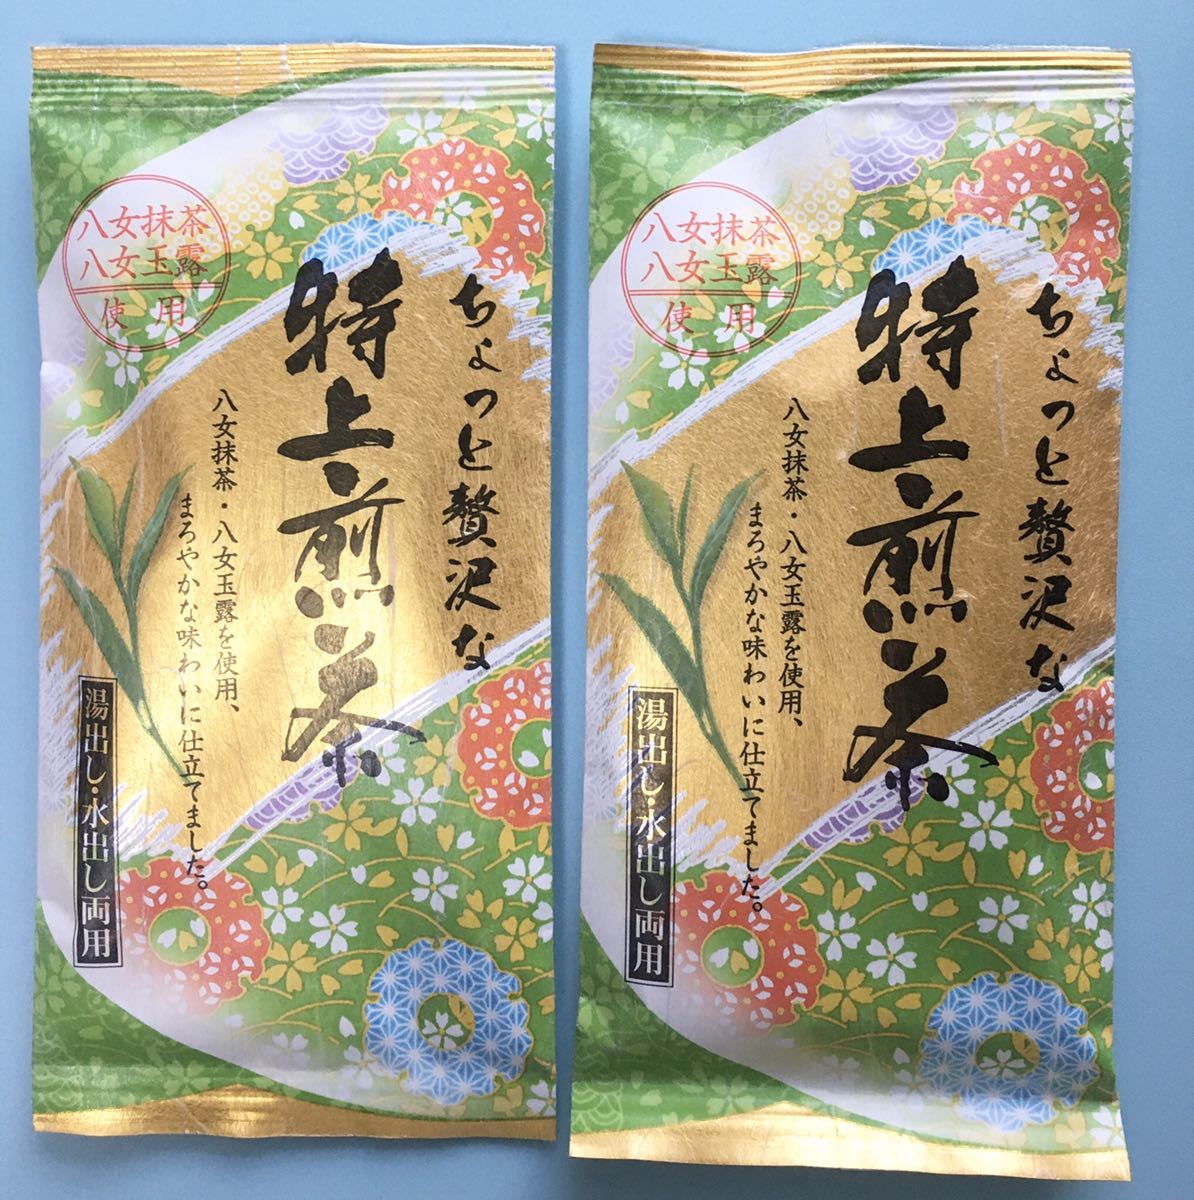 日本未入荷 知覧茶 特上煎茶 お茶 厳選3種セット 緑茶 静岡茶 八女茶好きにも